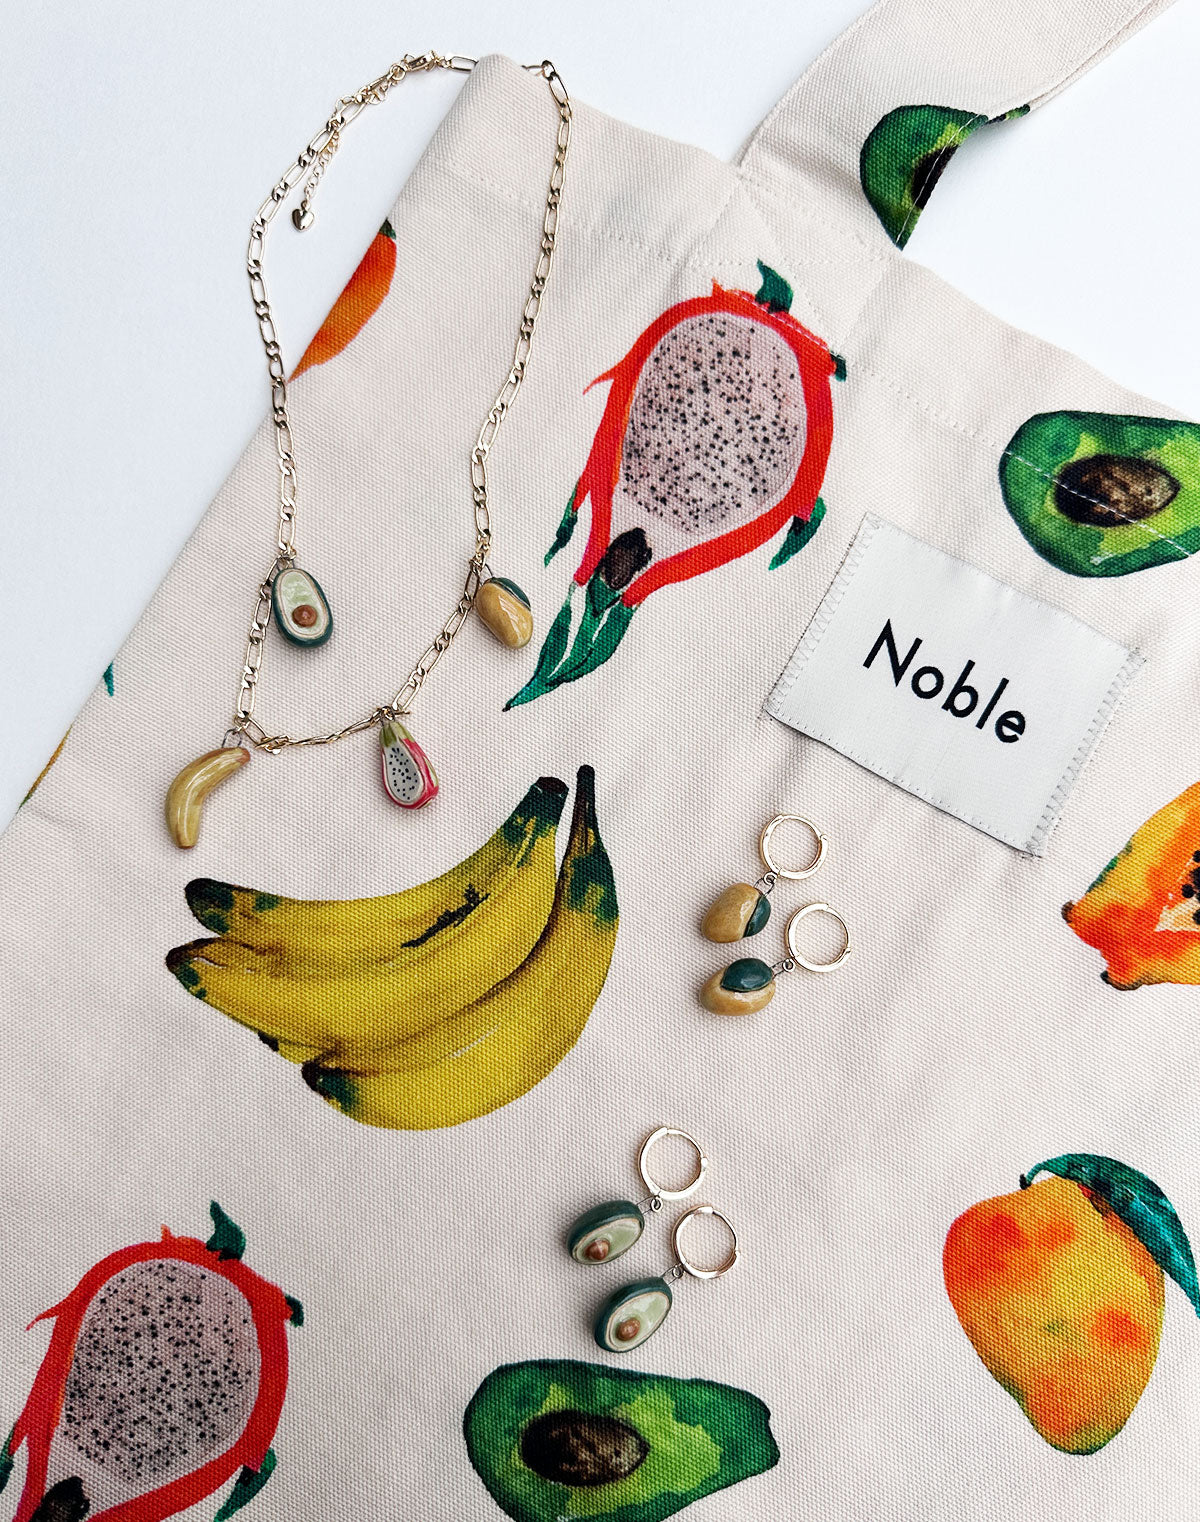 Noble Tote Bag in Frutas